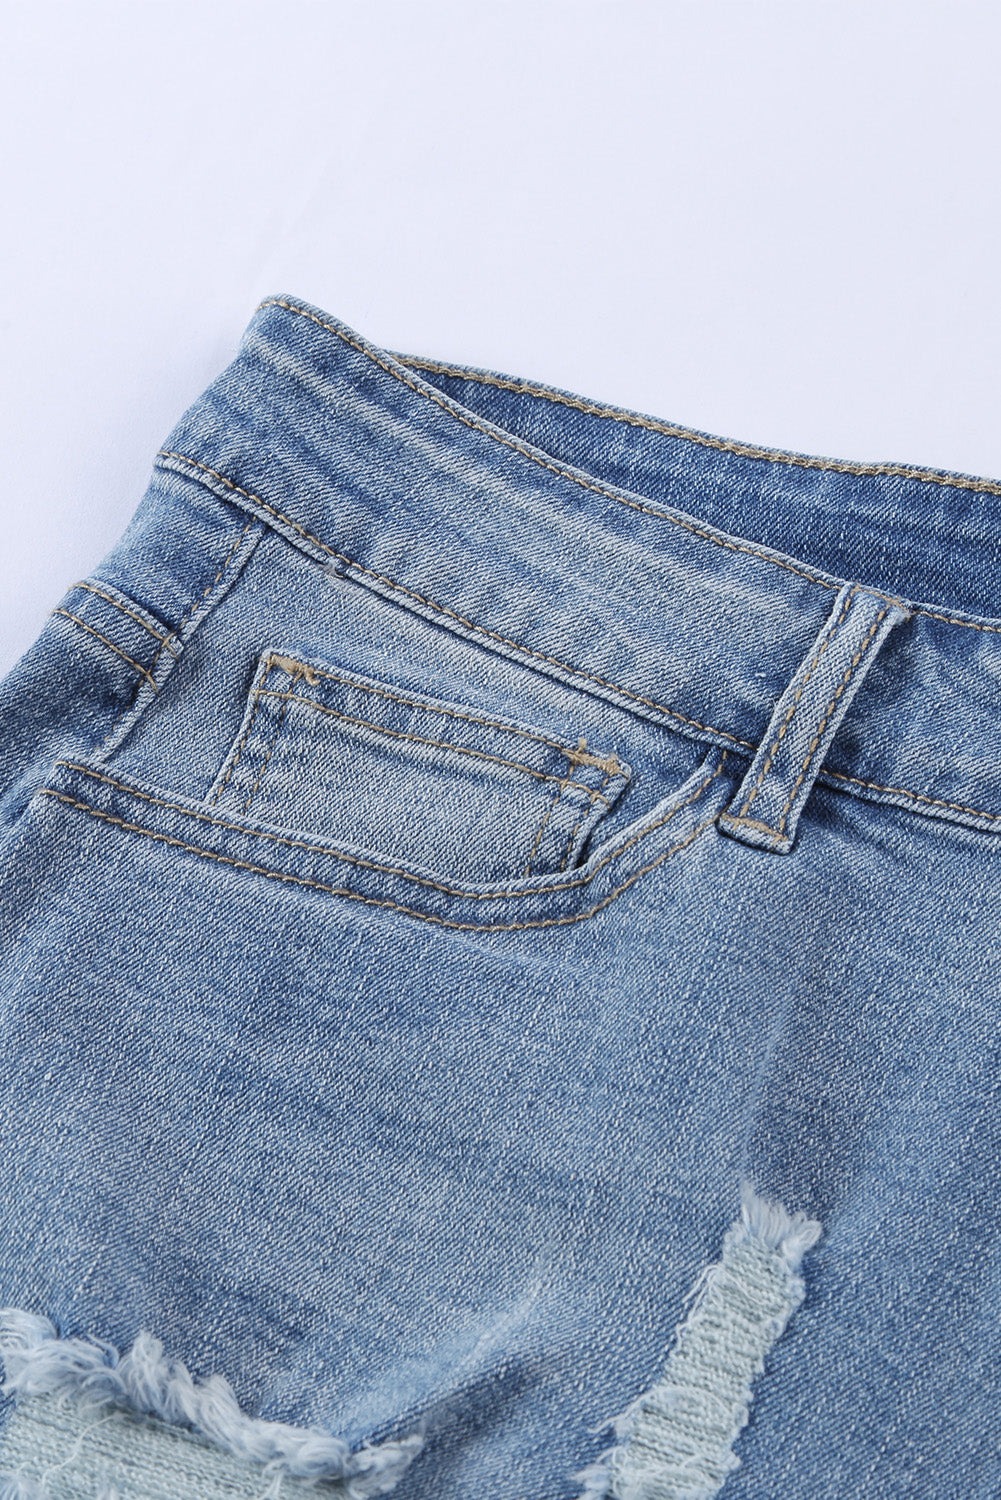 Pantaloncini di jeans vintage sbiaditi e invecchiati